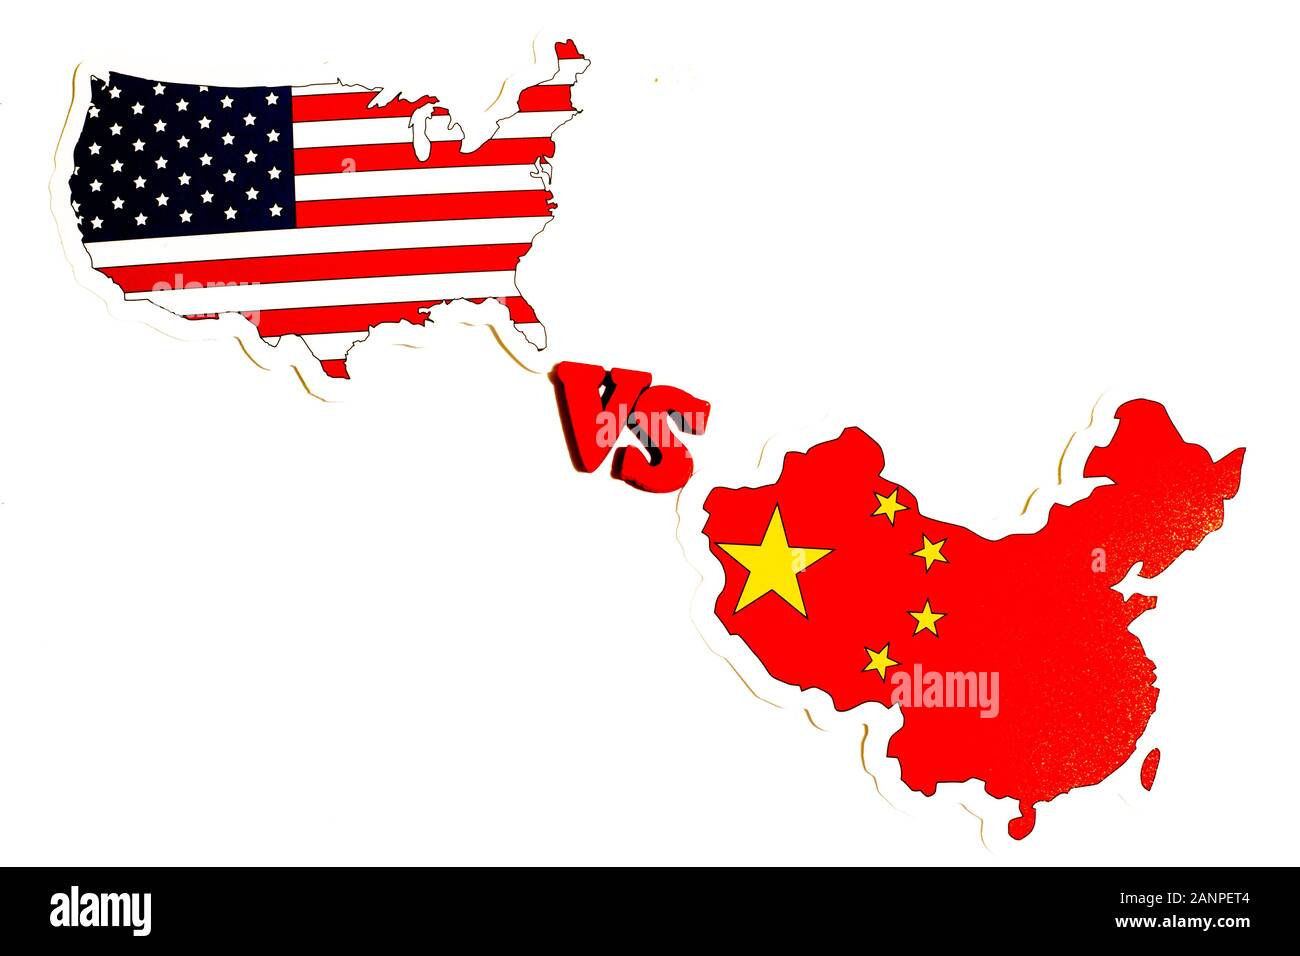 Los Angeles, Kalifornien, USA - 17. Januar 2020: China vs. USA-Konzept. Amerika gegen die chinesischen Nachrichten, politische Illustration. Kopierbereich, Illustration Stockfoto